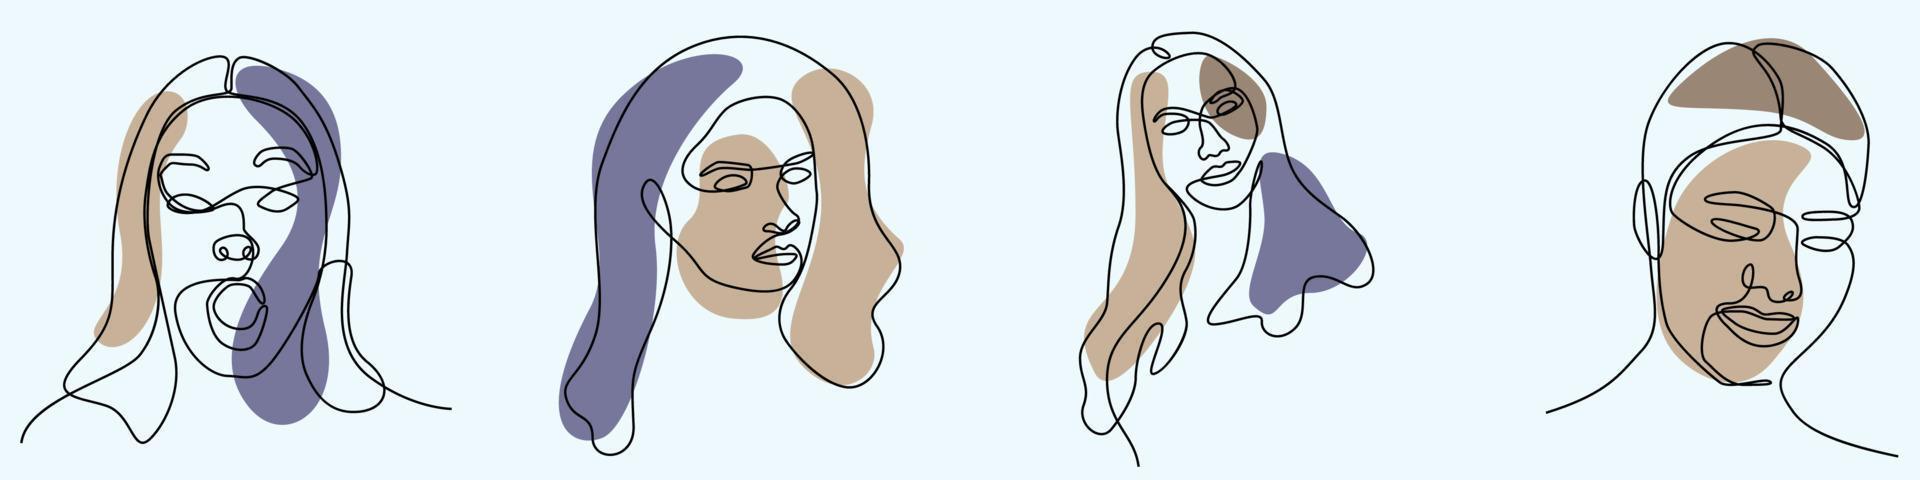 dibujo continuo a mano de una línea de arte de línea de cara de mujer femenino vector